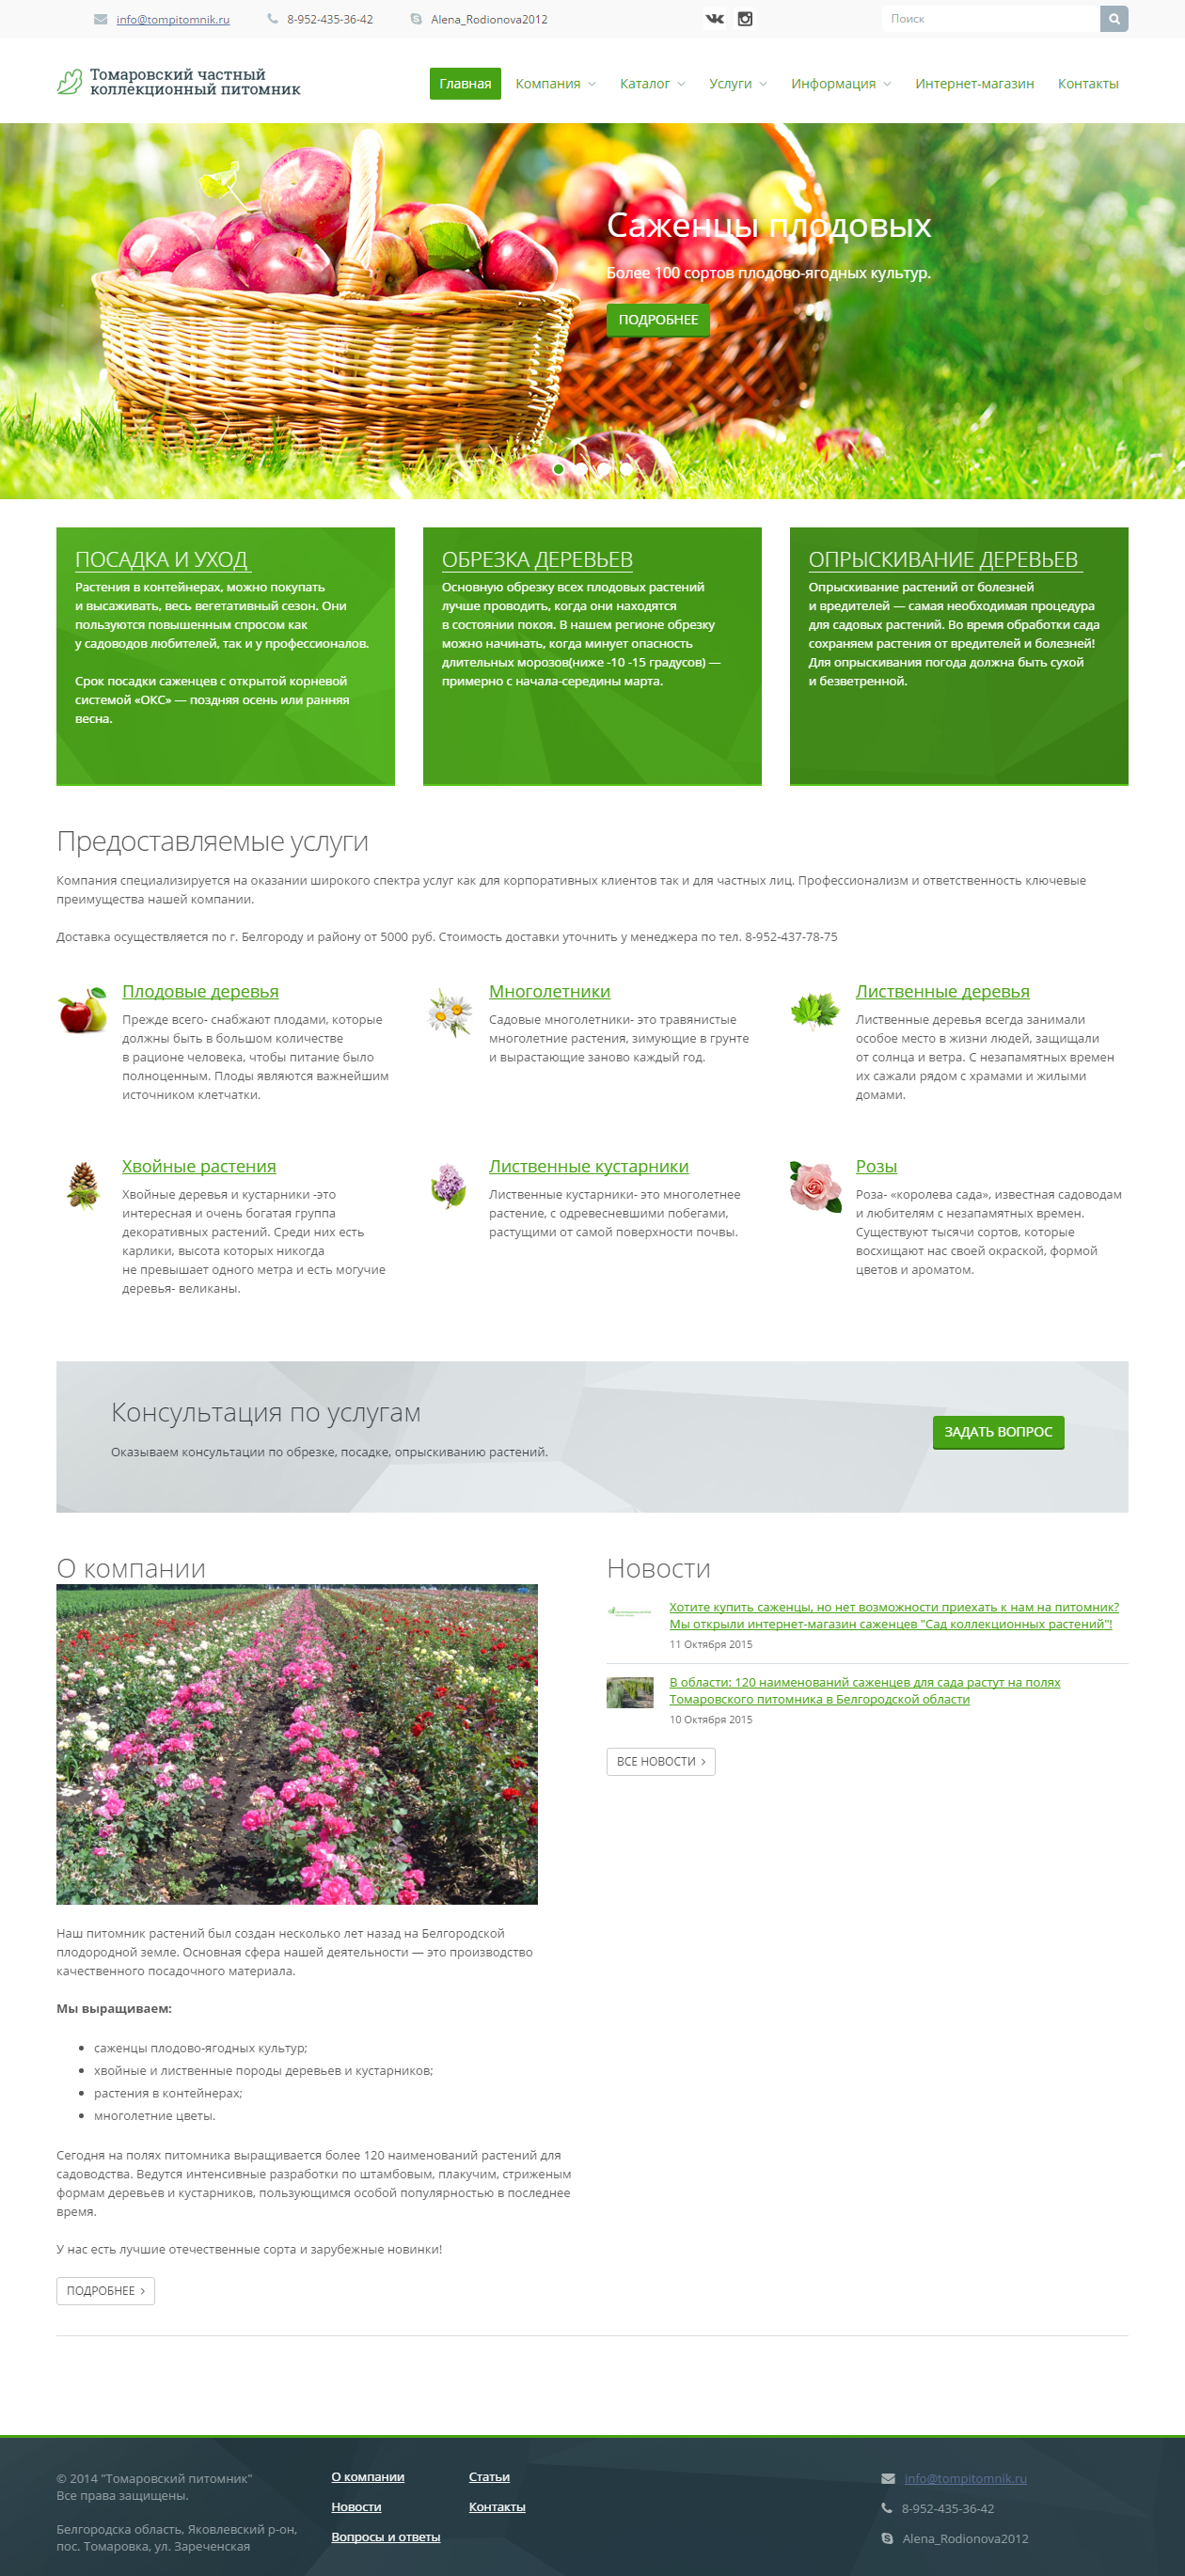 Разработка каталожного сайта для Томаровского питомника растений — Главная страница